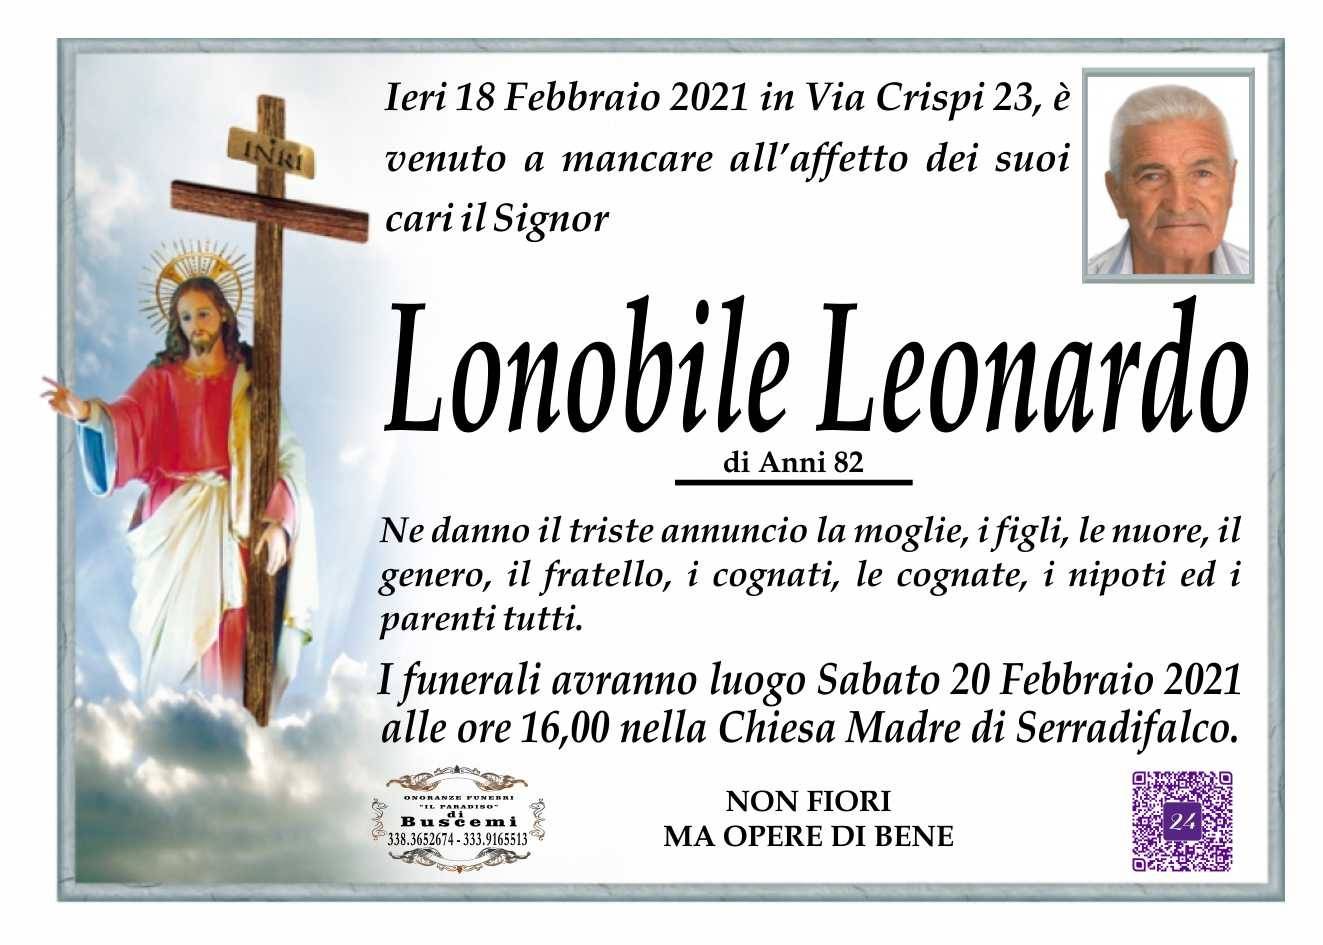 Leonardo Lonobile